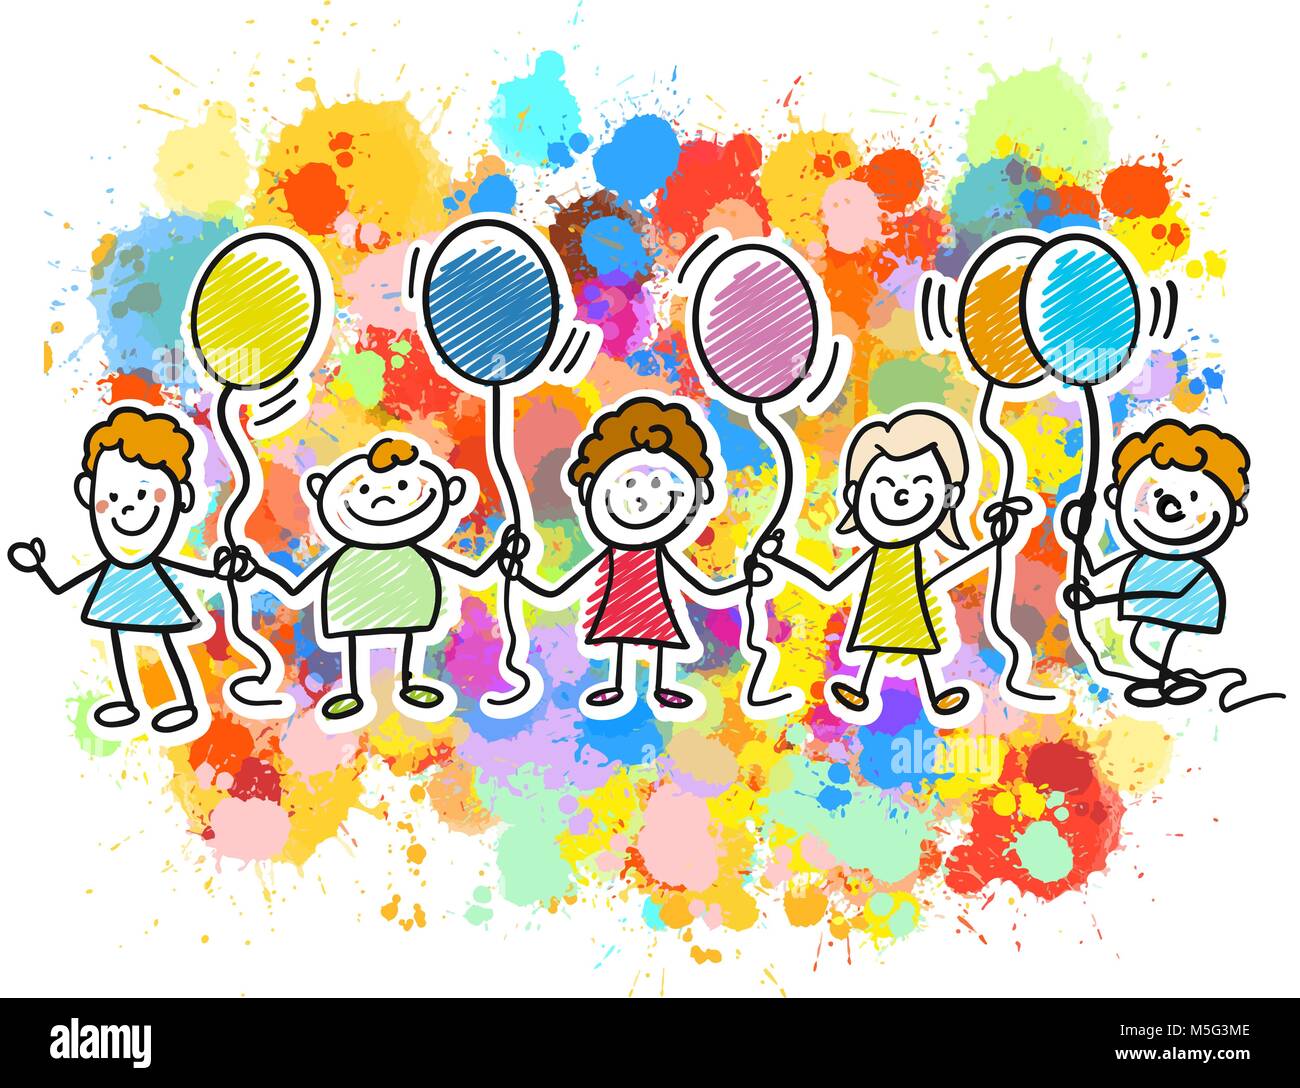 Contenti i bambini insieme con palloncini. Schizzi tracciati a mano scarabocchi in splendidi abiti e costumi. Infanzia felice icone. Illustrazione Vettoriale